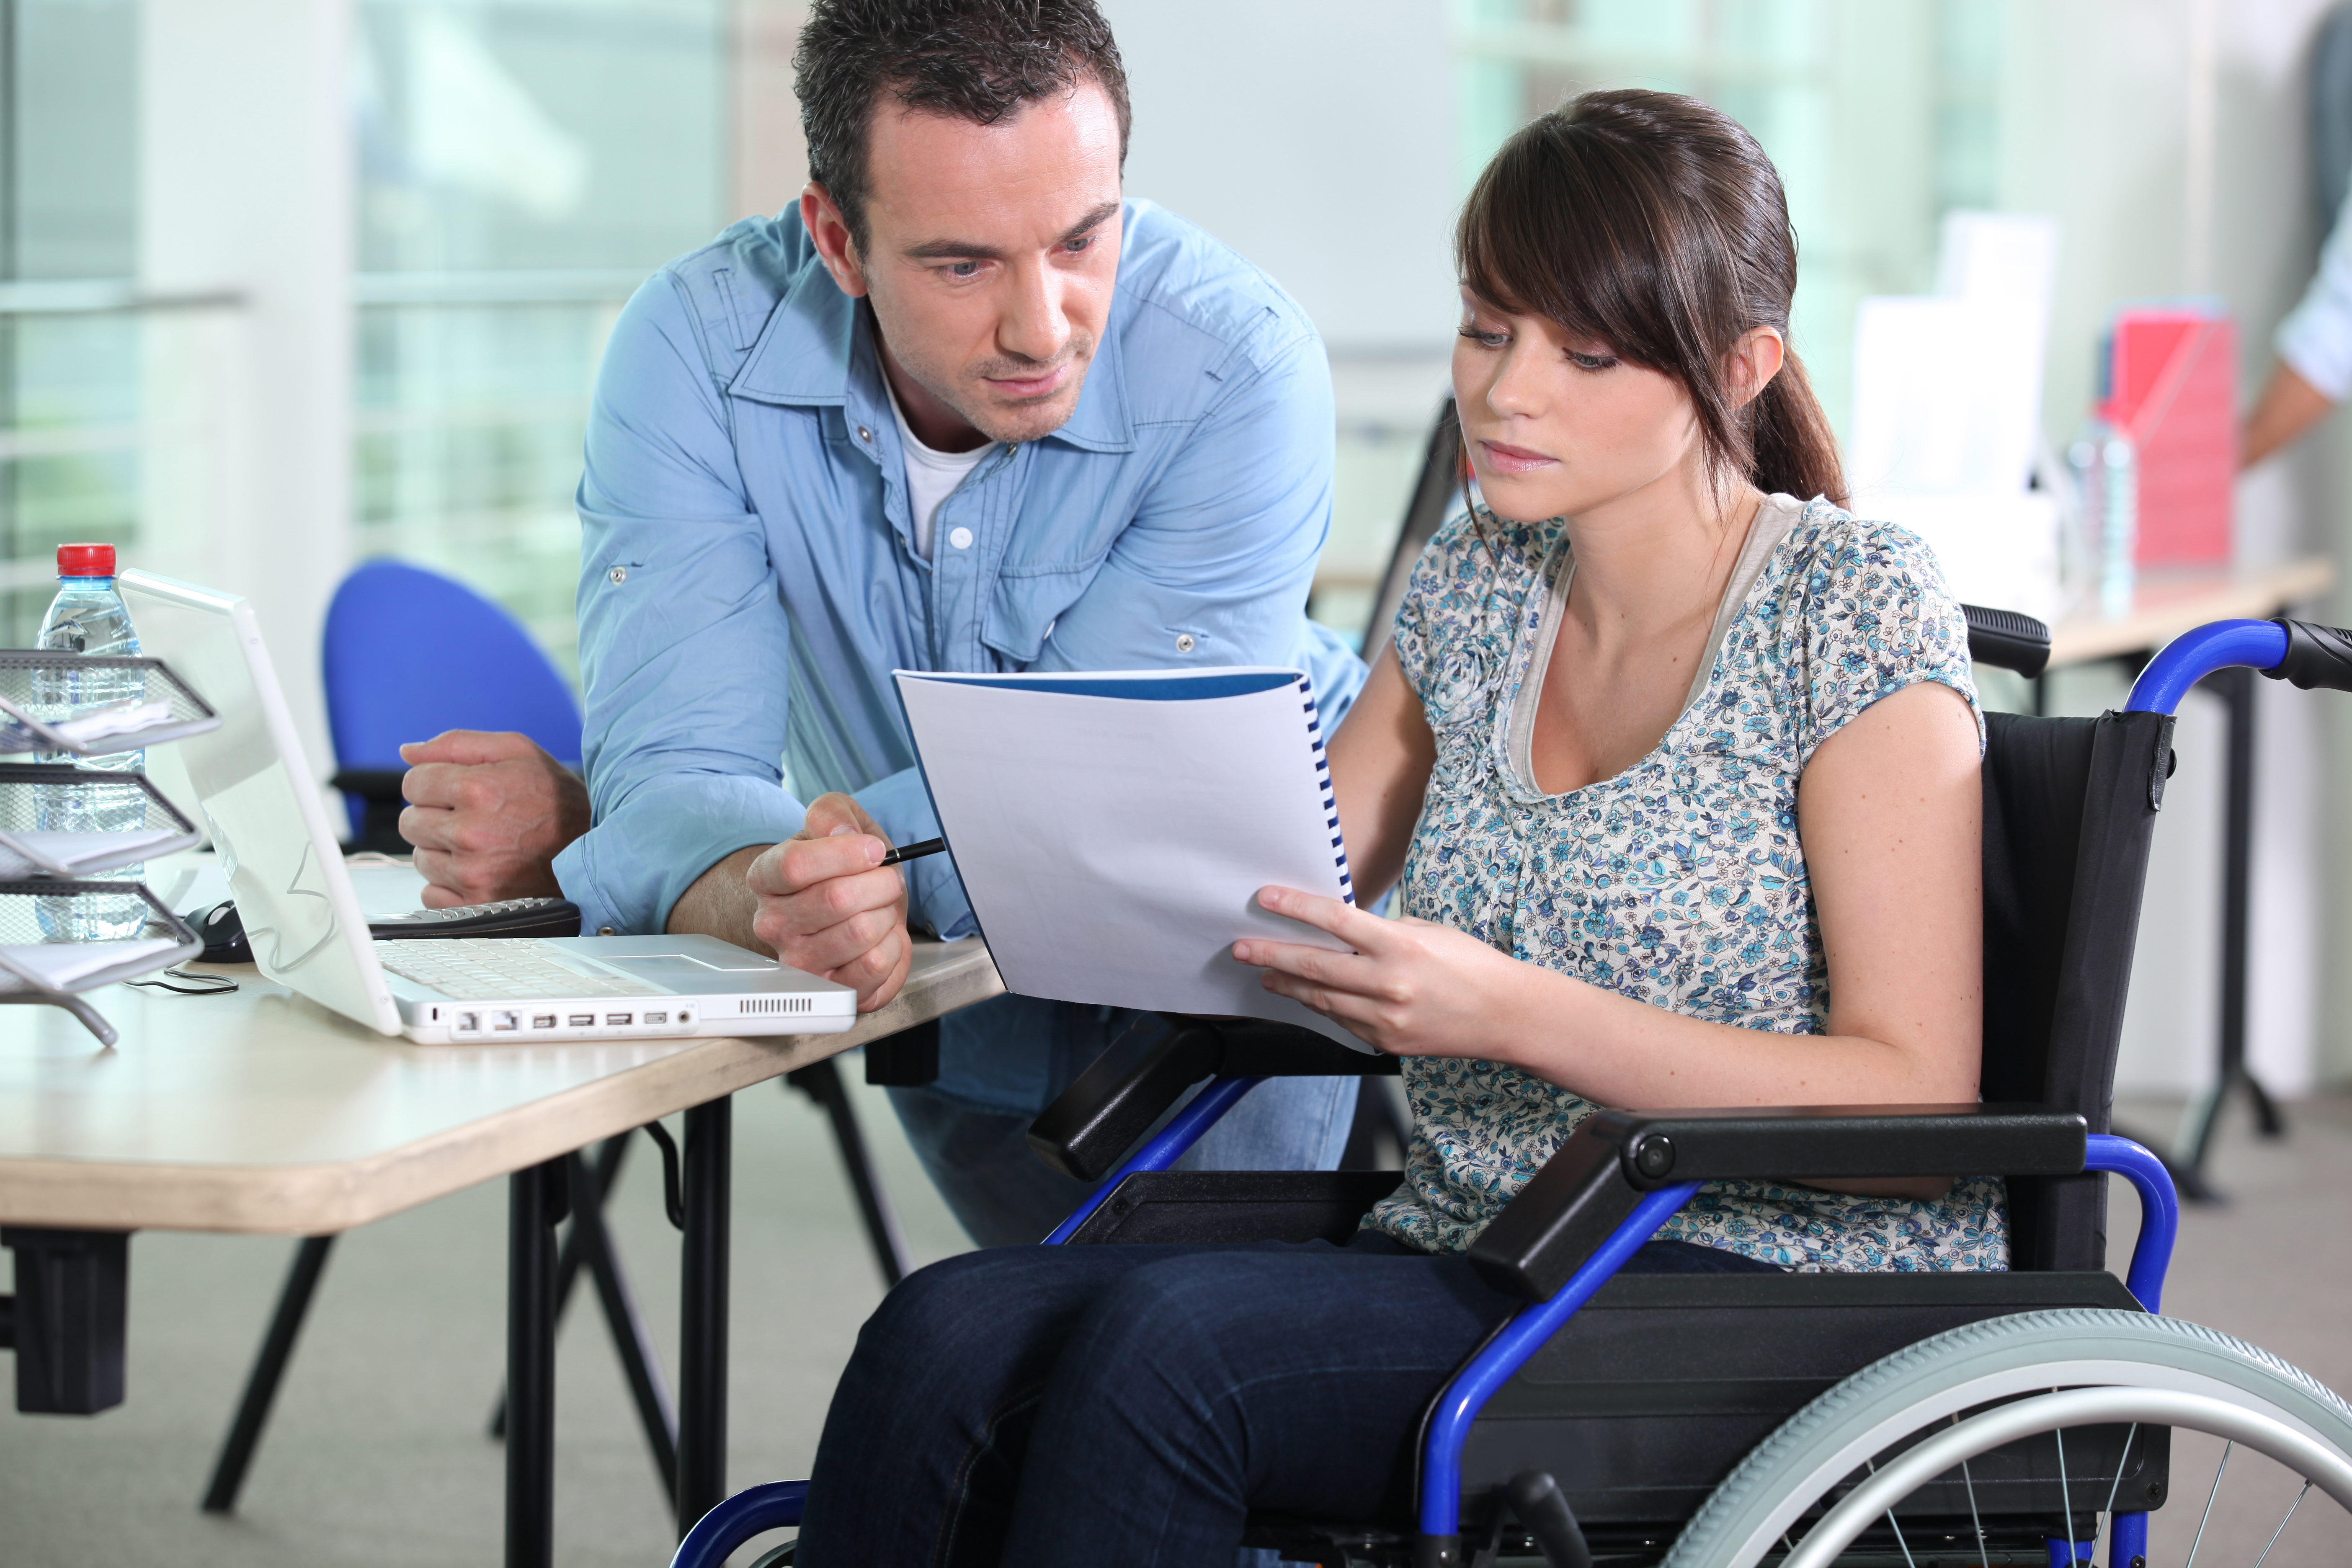 Организации помогающие с работой. Консультирование инвалидов. Люди с инвалидностью. Работники с ограниченными возможностями. Трудоустройство инвалидов.